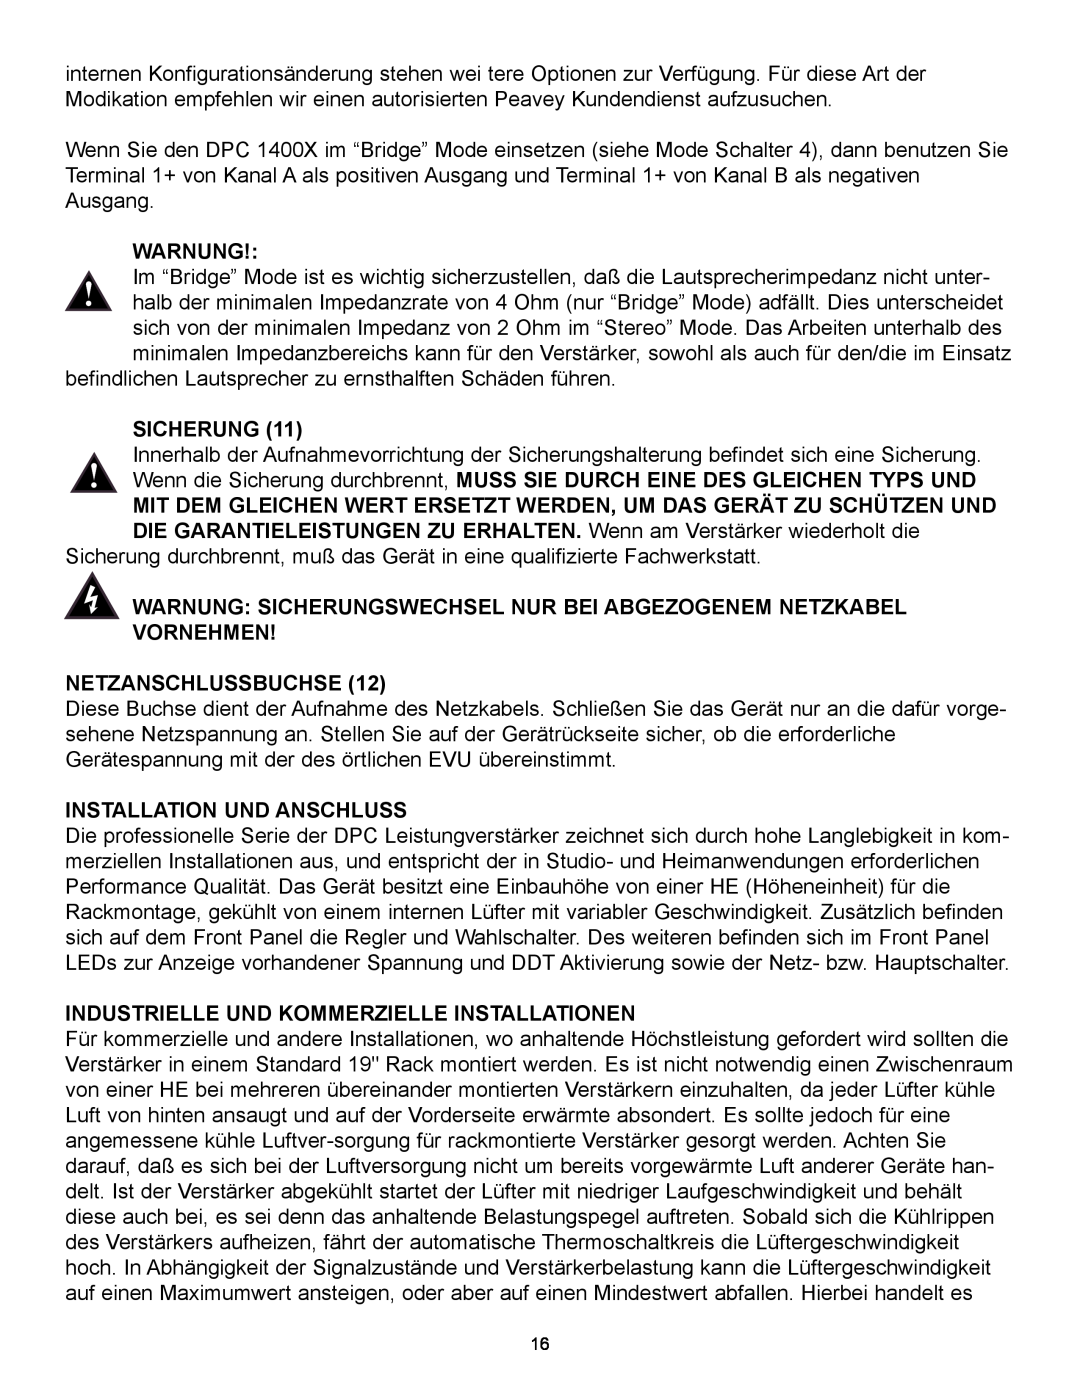 Peavey 1400X owner manual Warnung Sicherungswechsel Nur Bei Abgezogenem Netzkabel Vornehmen, Netzanschlussbuchse 